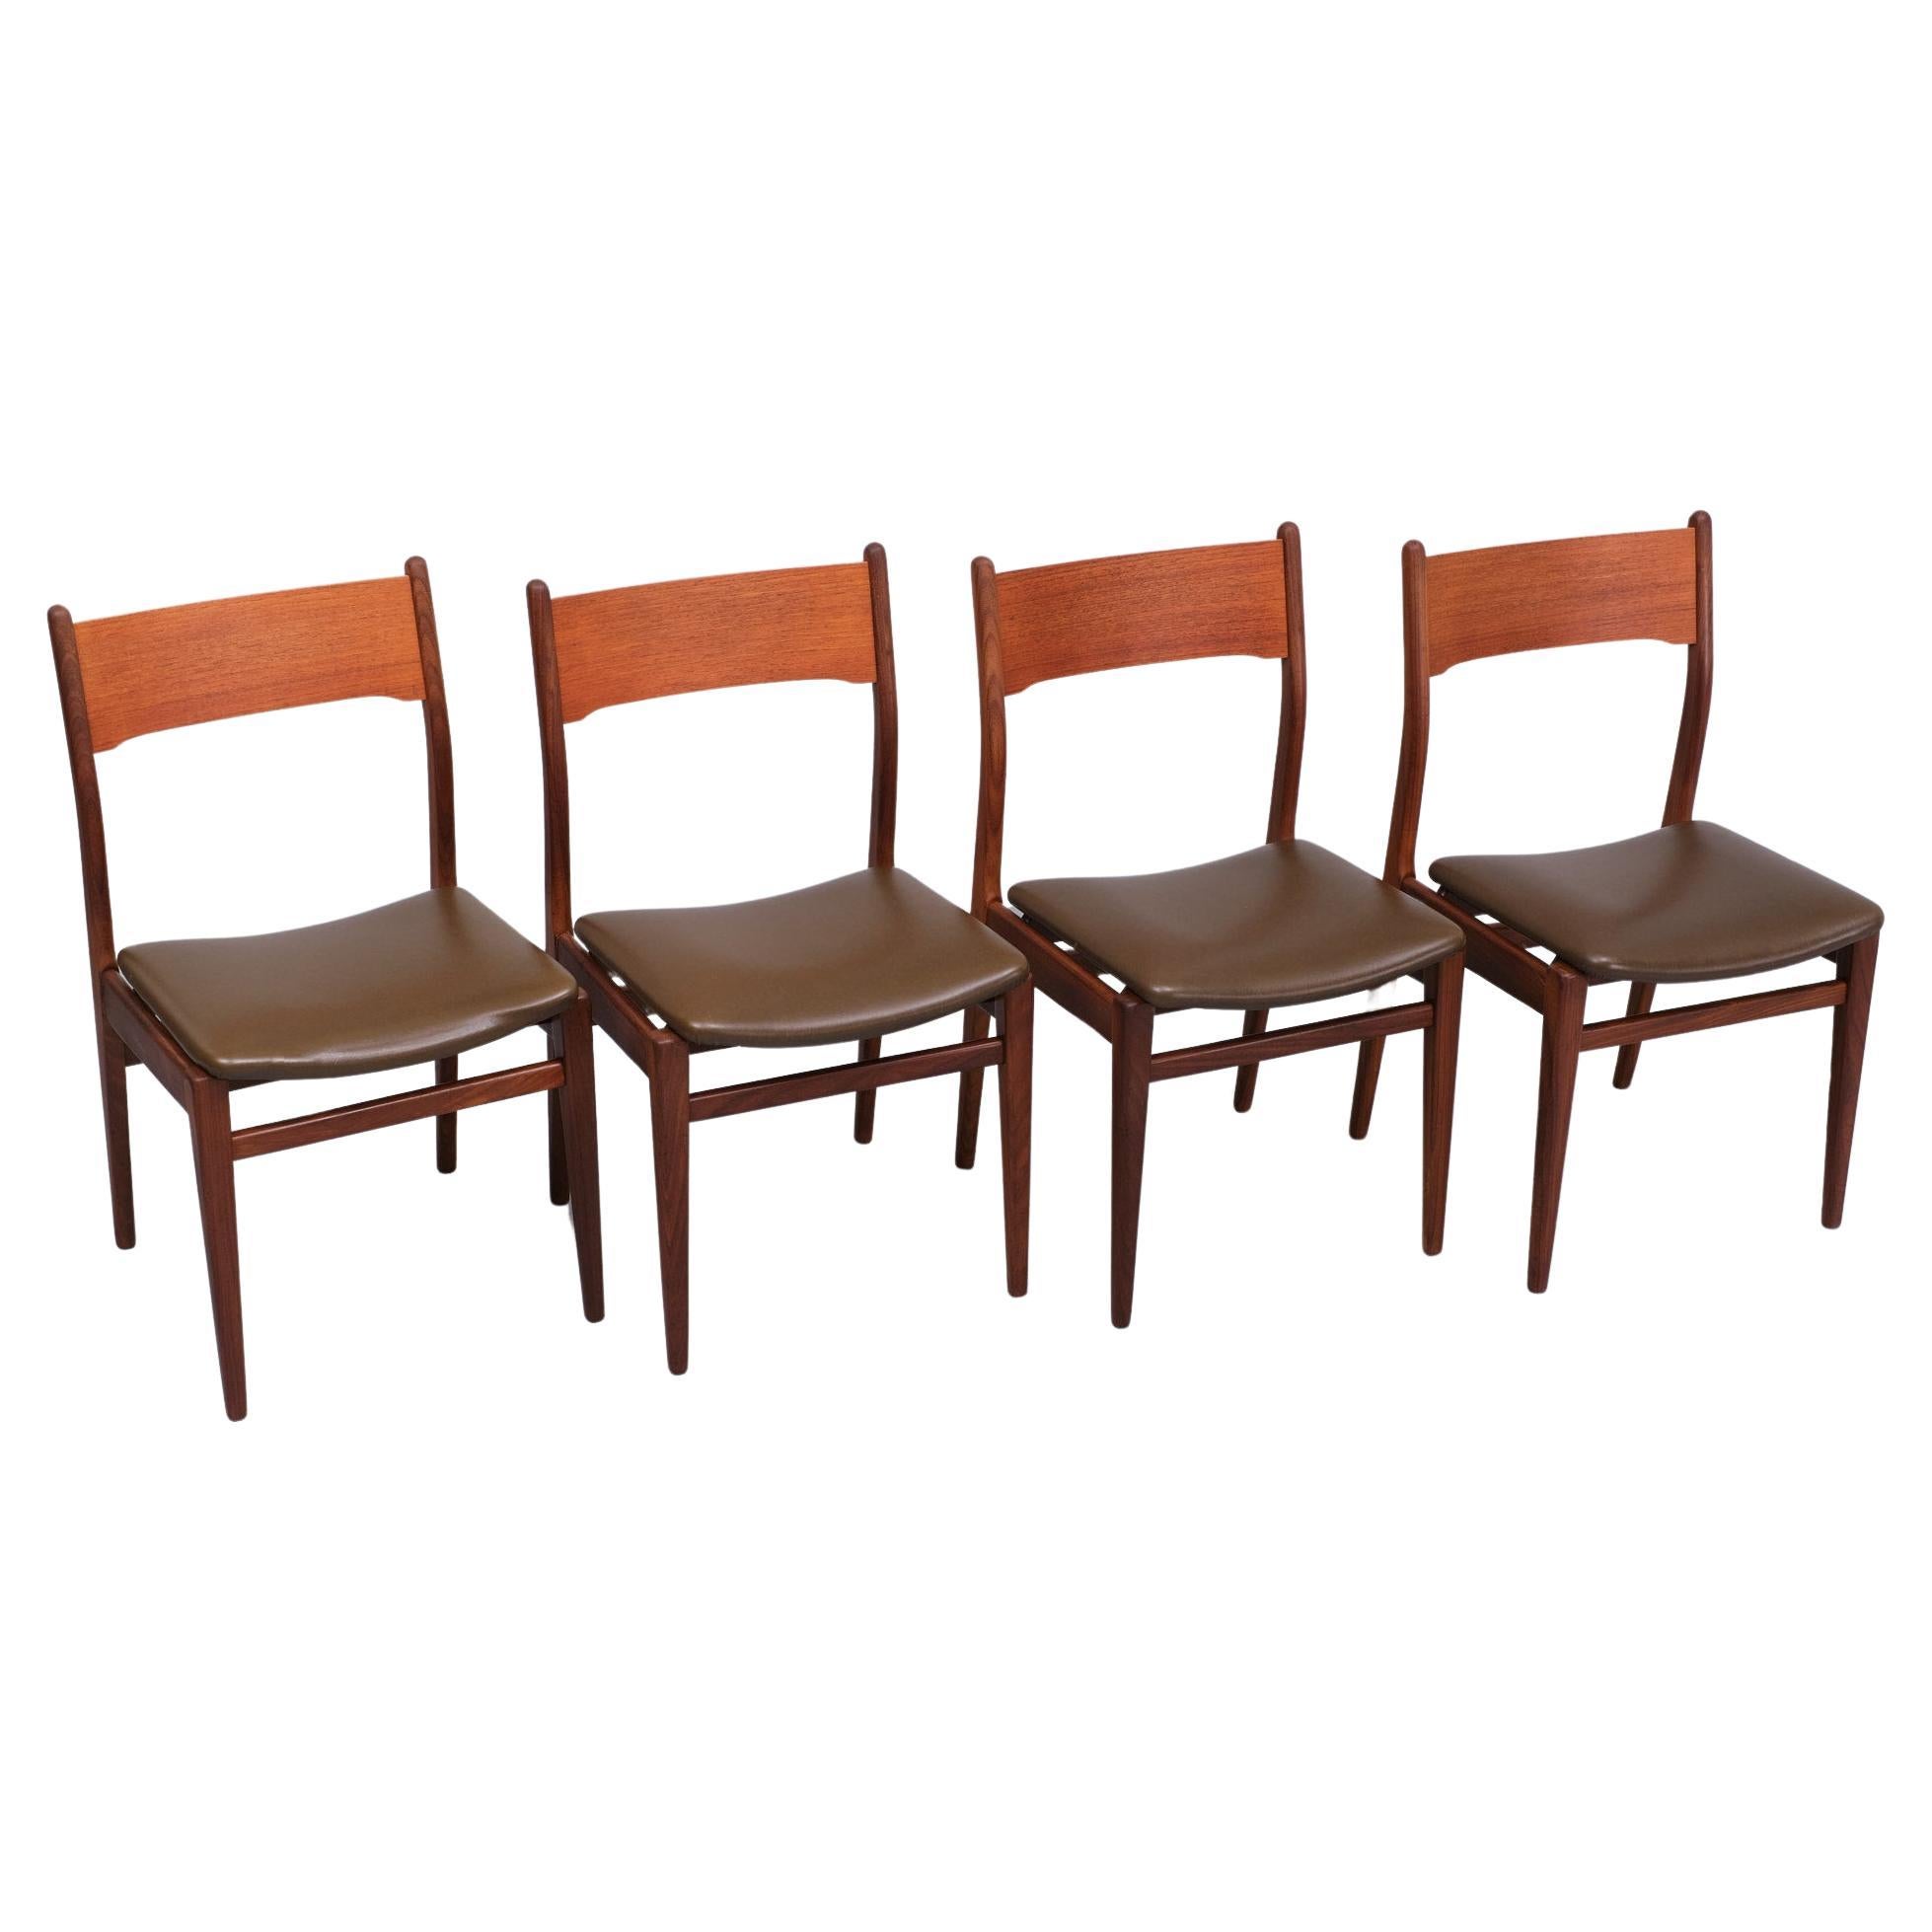 Très bel ensemble de 4 chaises de salle à manger. Teck massif, livré avec une housse en simili-cuir marron. 
tapisserie d'ameublement .belle forme organique .années 1960 Hollande  Bon état .
La table de salle à manger assortie est également à